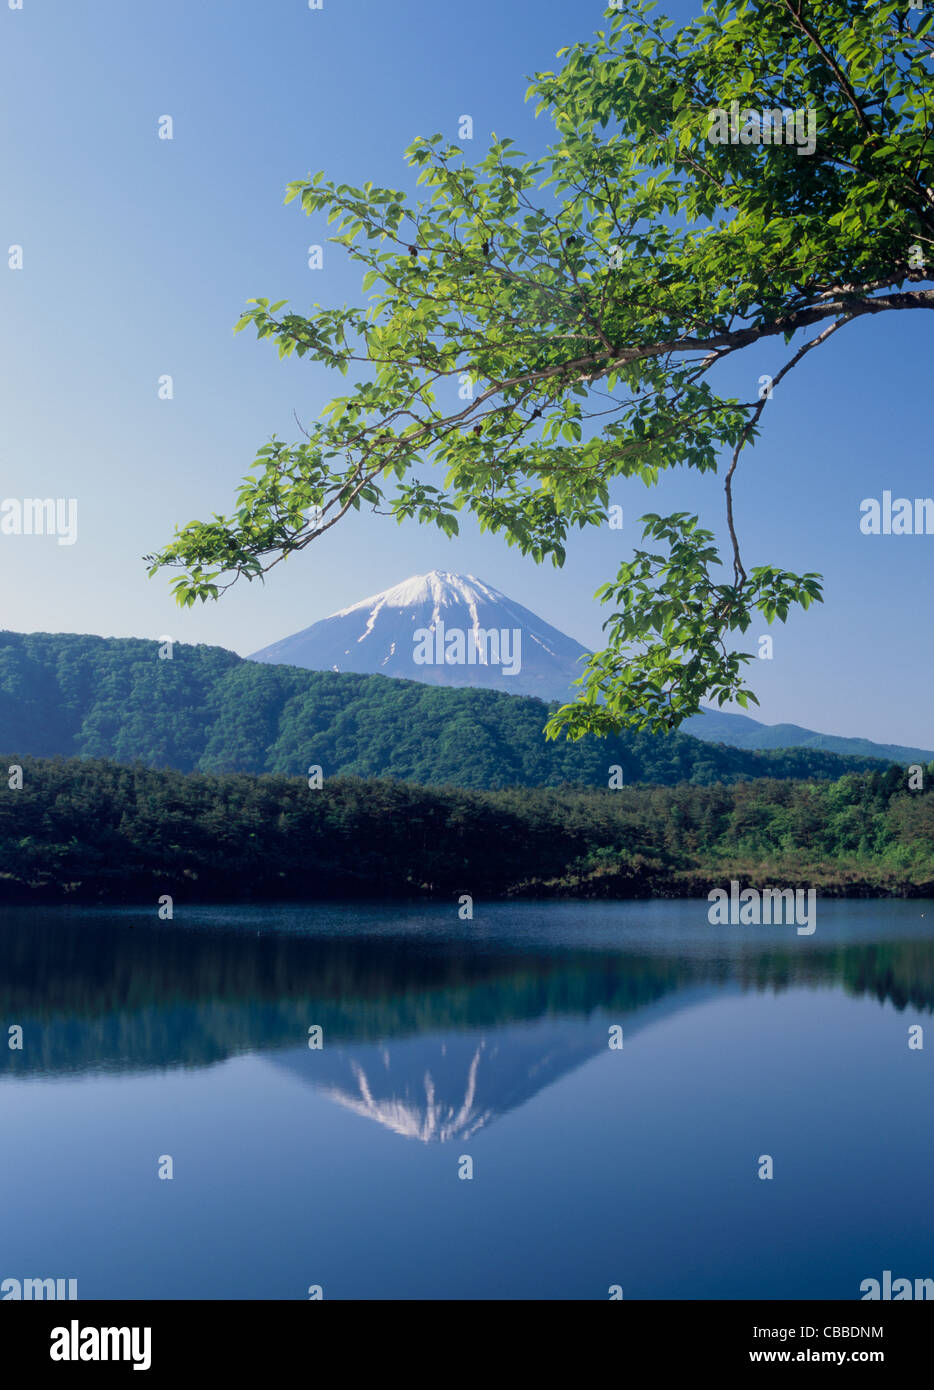 Mount Fuji and Lake Saiko, Fujikawaguchiko, Yamanashi, Japan Stock Photo